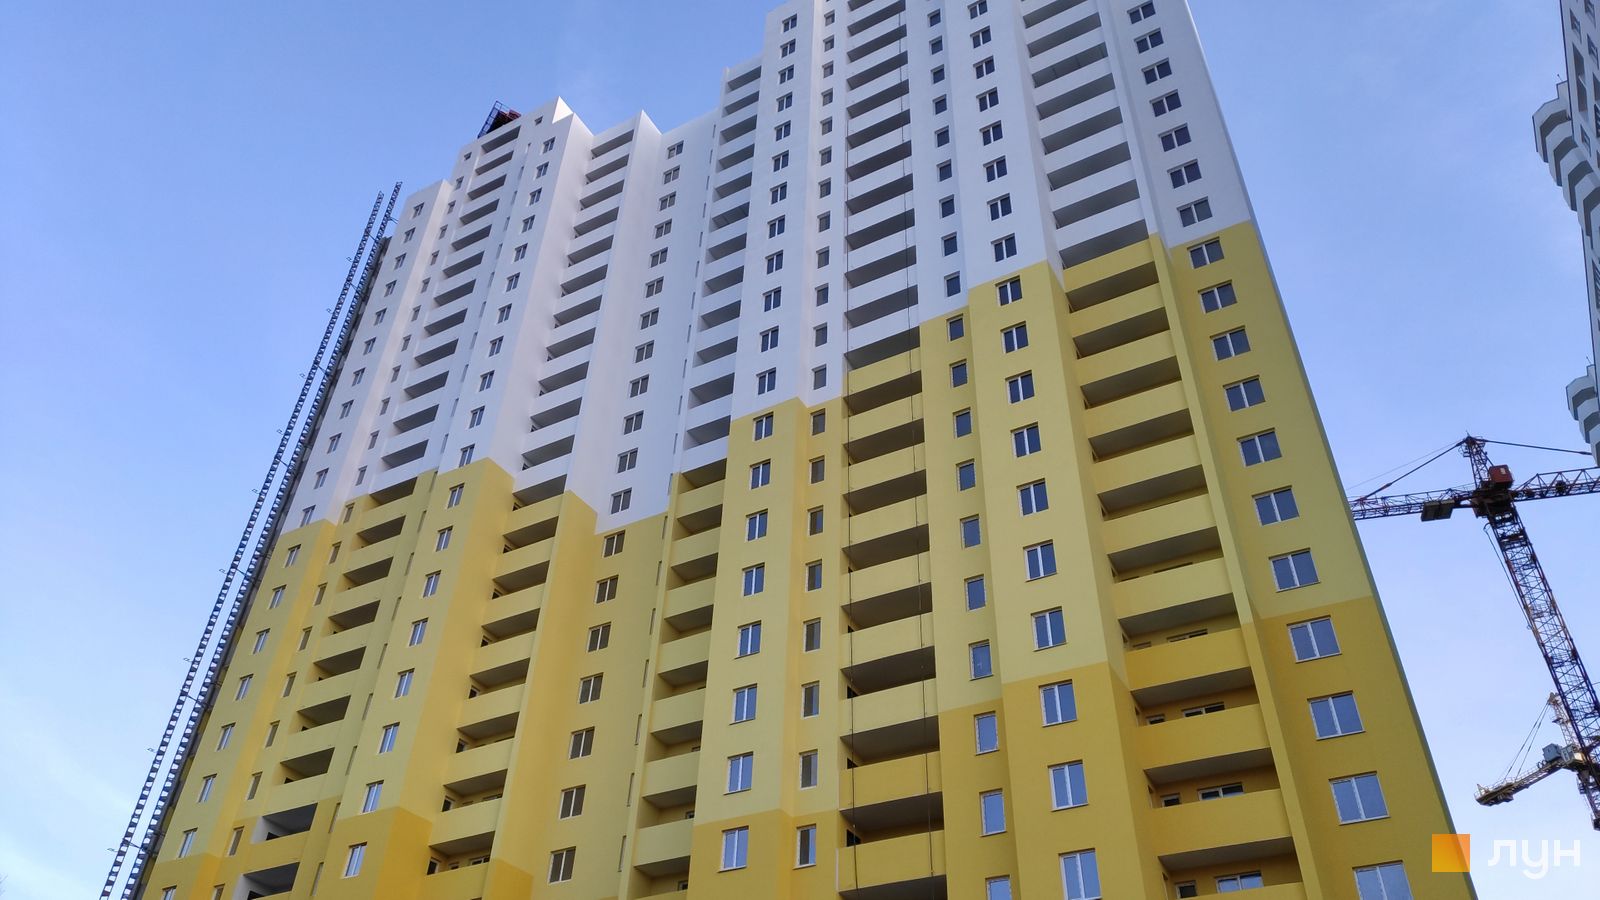 Моніторинг будівництва ЖК Одеський бульвар - Ракурс 1, листопад 2019